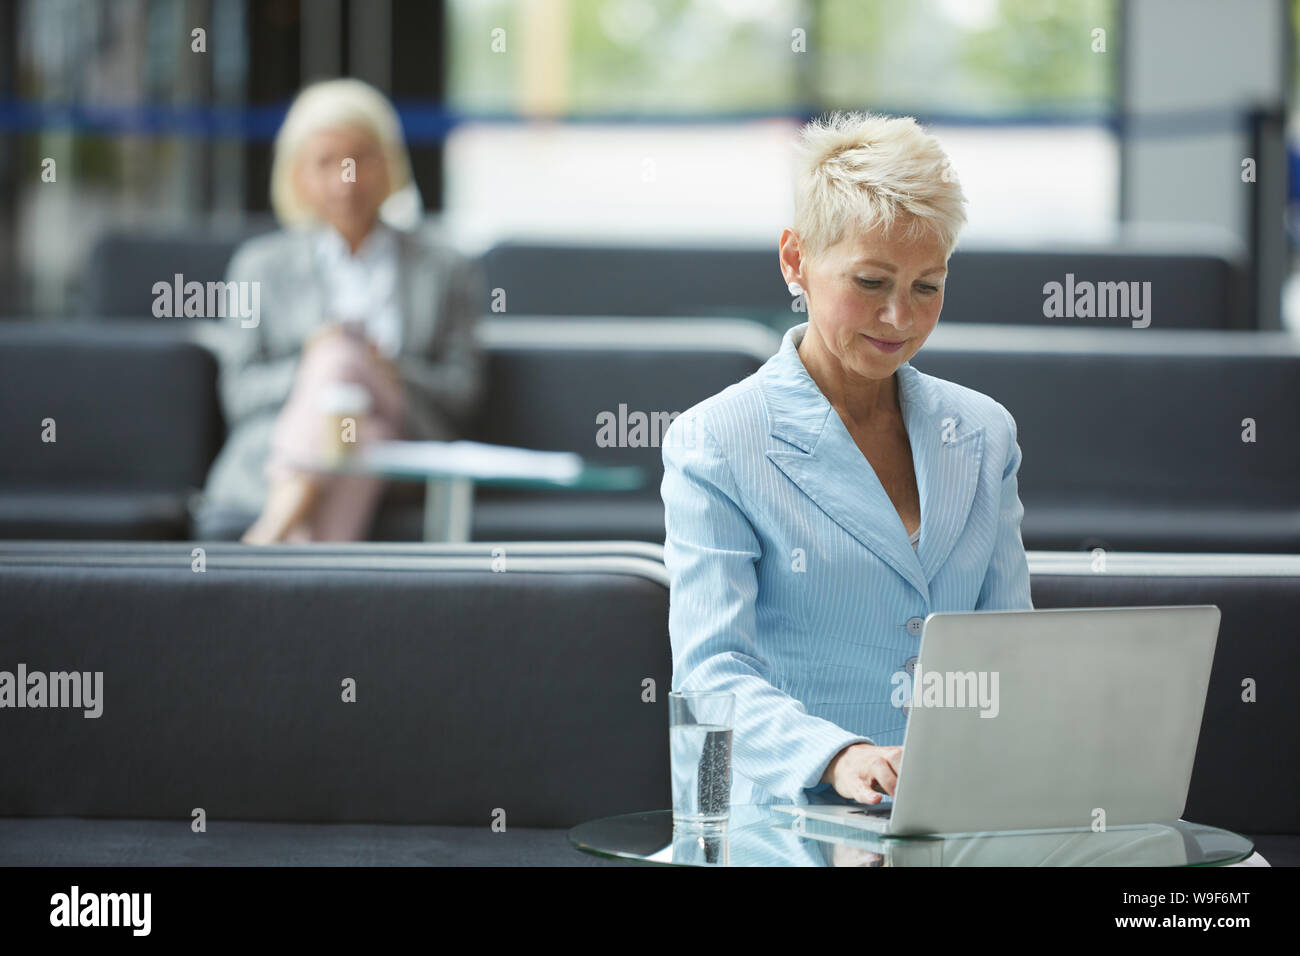 Femme mature avec de courts cheveux blonds assis à la table et de la saisie sur ordinateur portable avec d'autres femme assise à l'arrière-plan à l'office de tourisme Banque D'Images